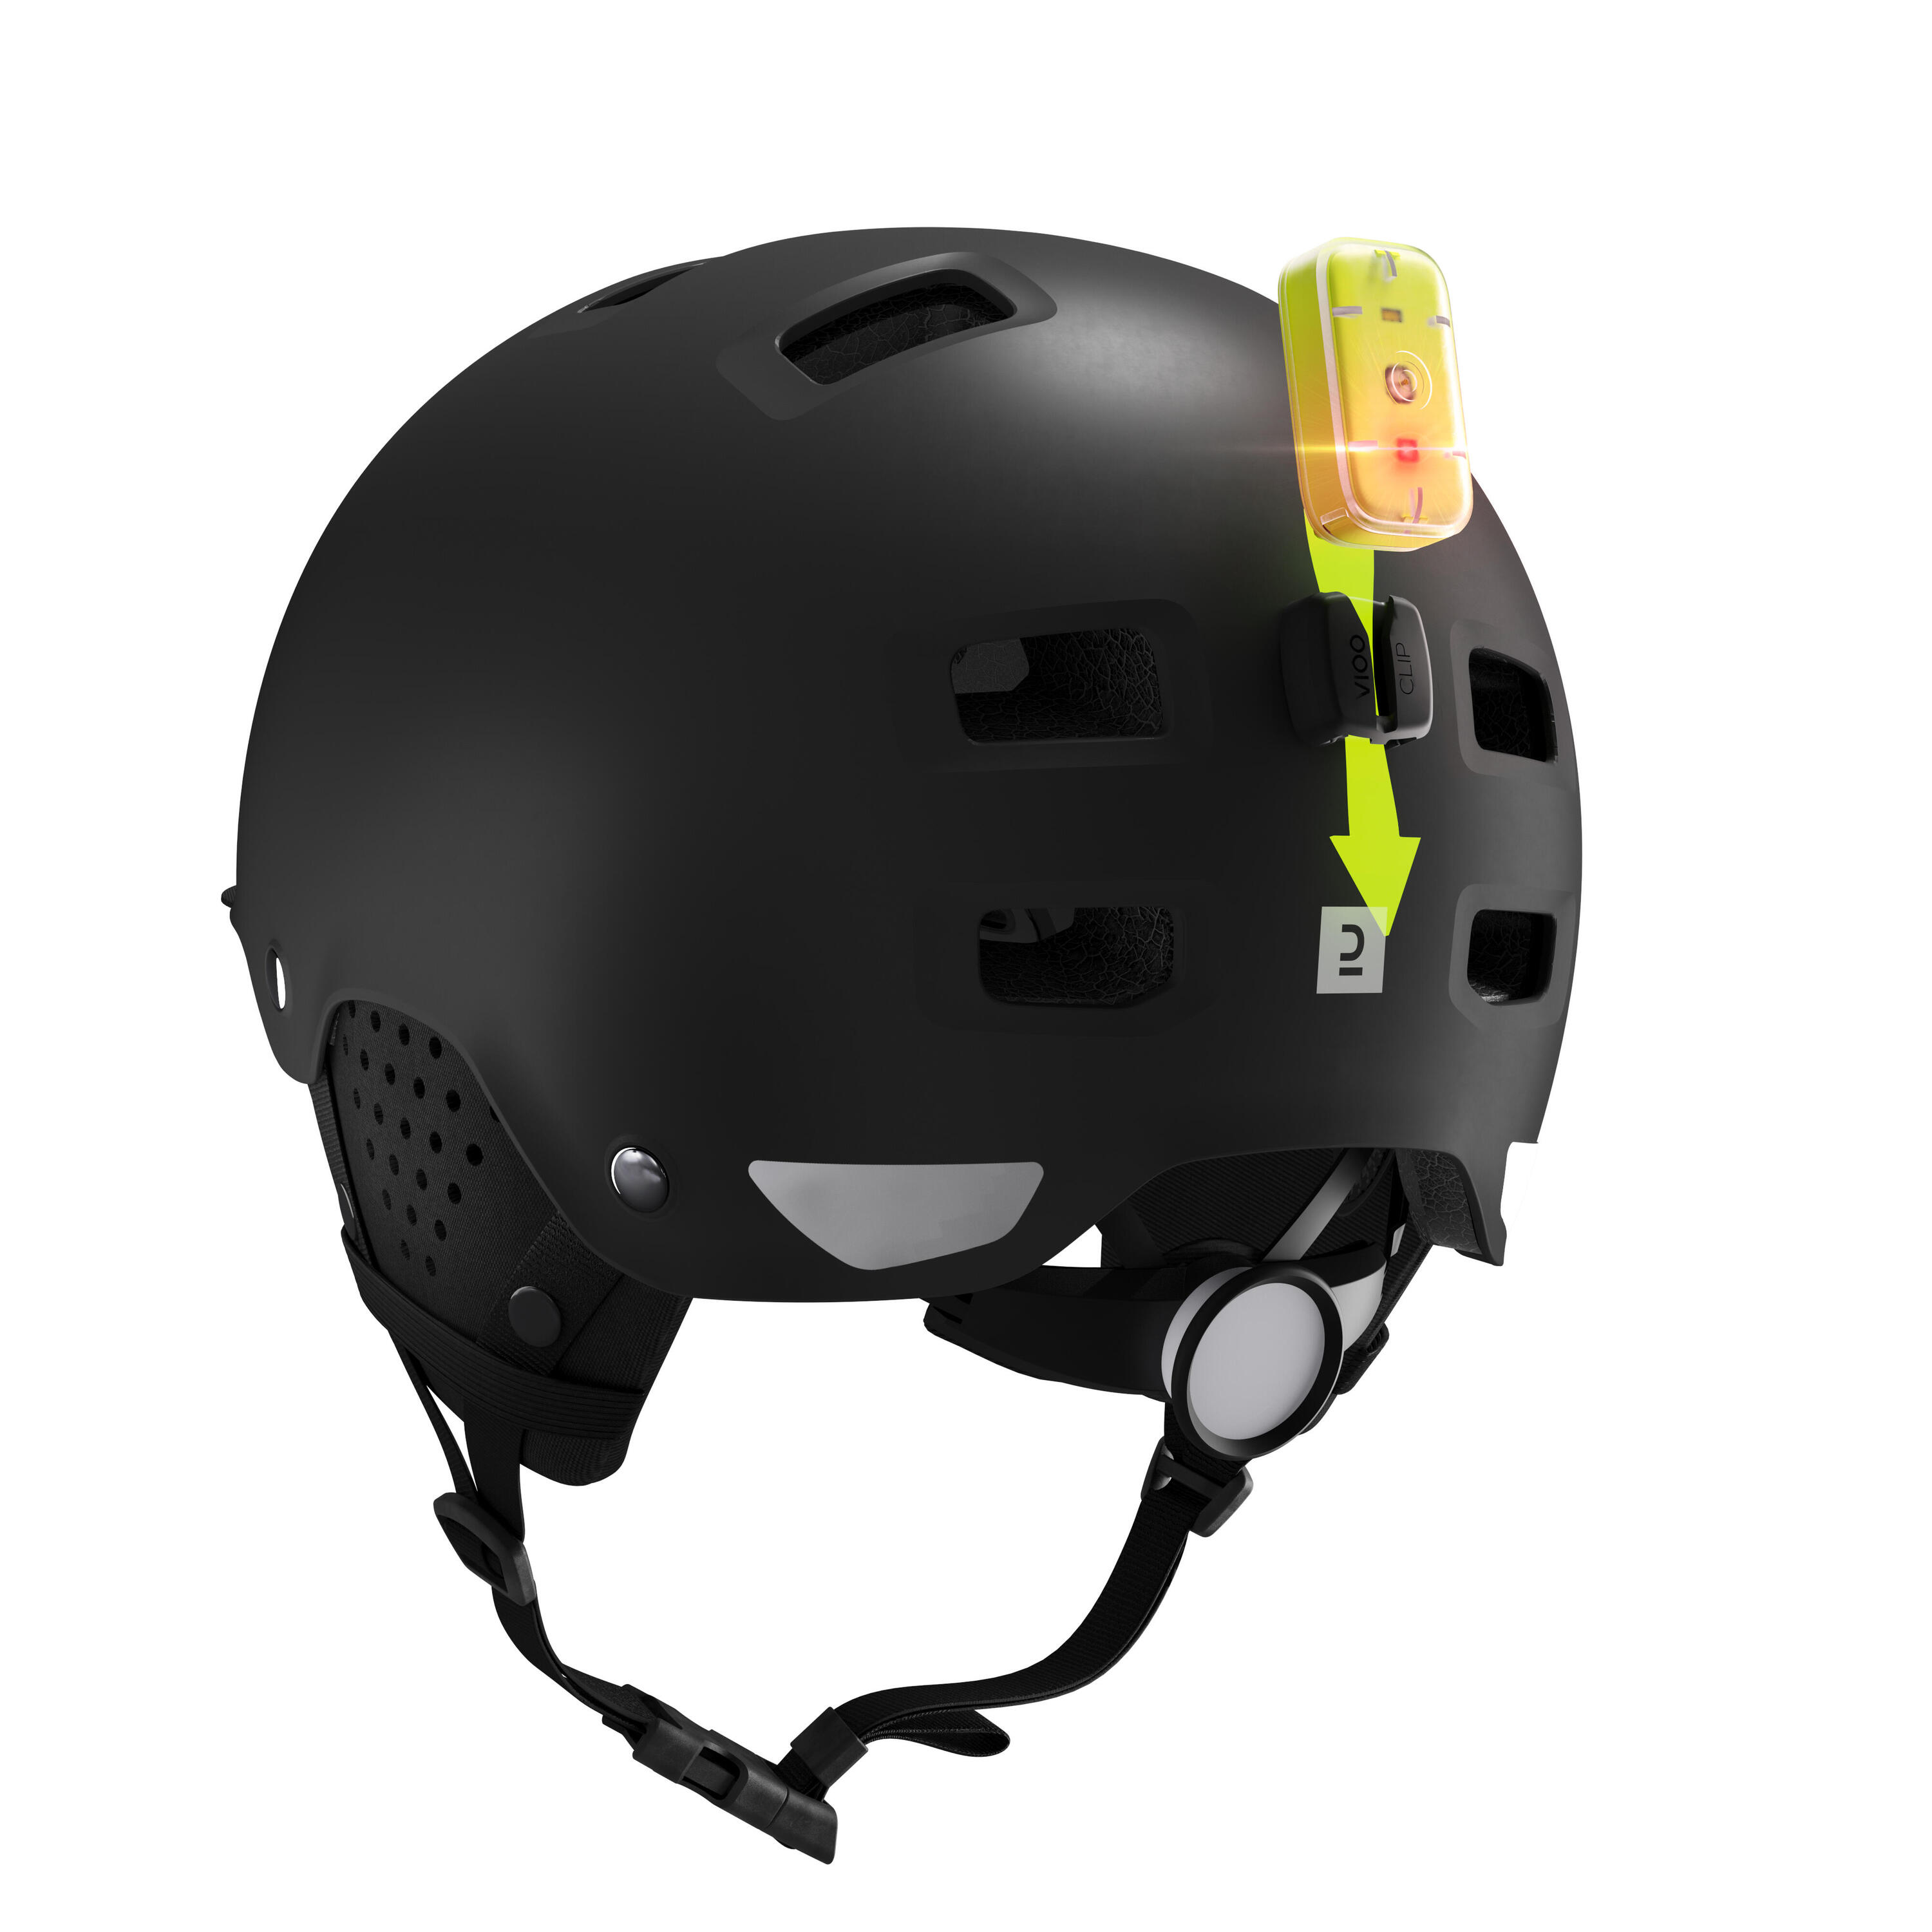 Bowl City Cycling Helmet 500 - Black 5/10